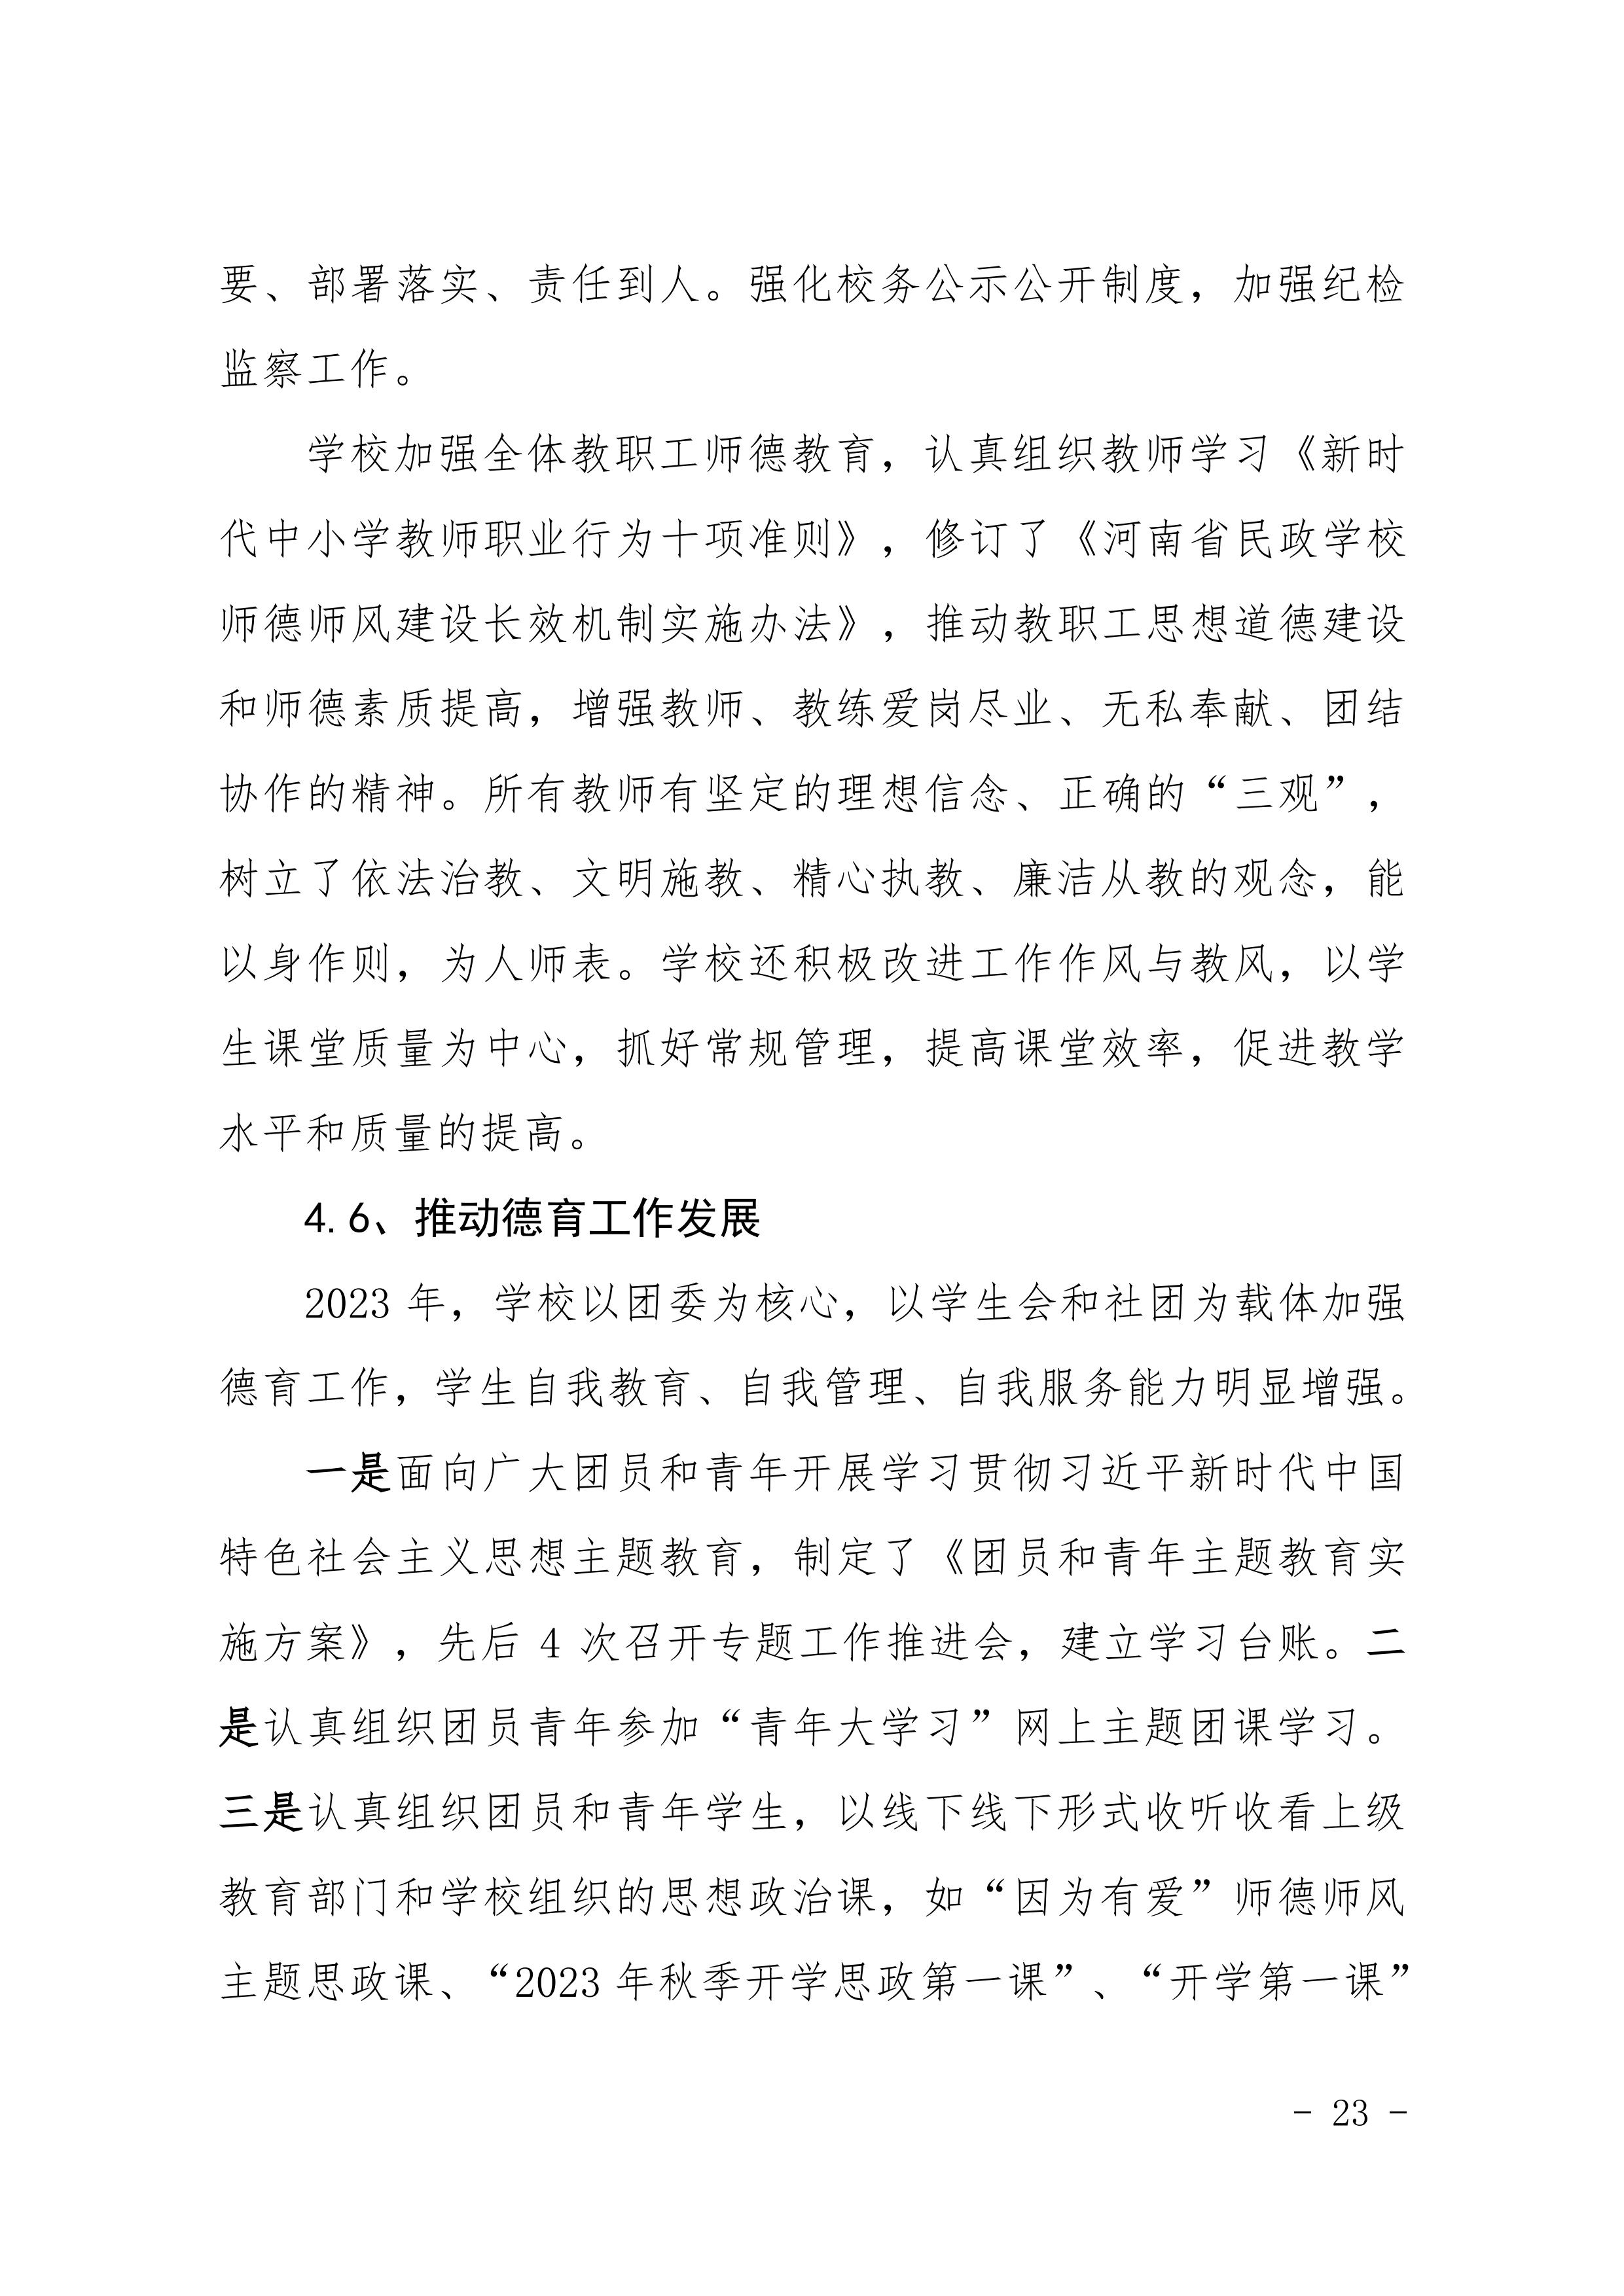 河南省民政学校职业教育质量报告（2023年度）发布版_26.jpg